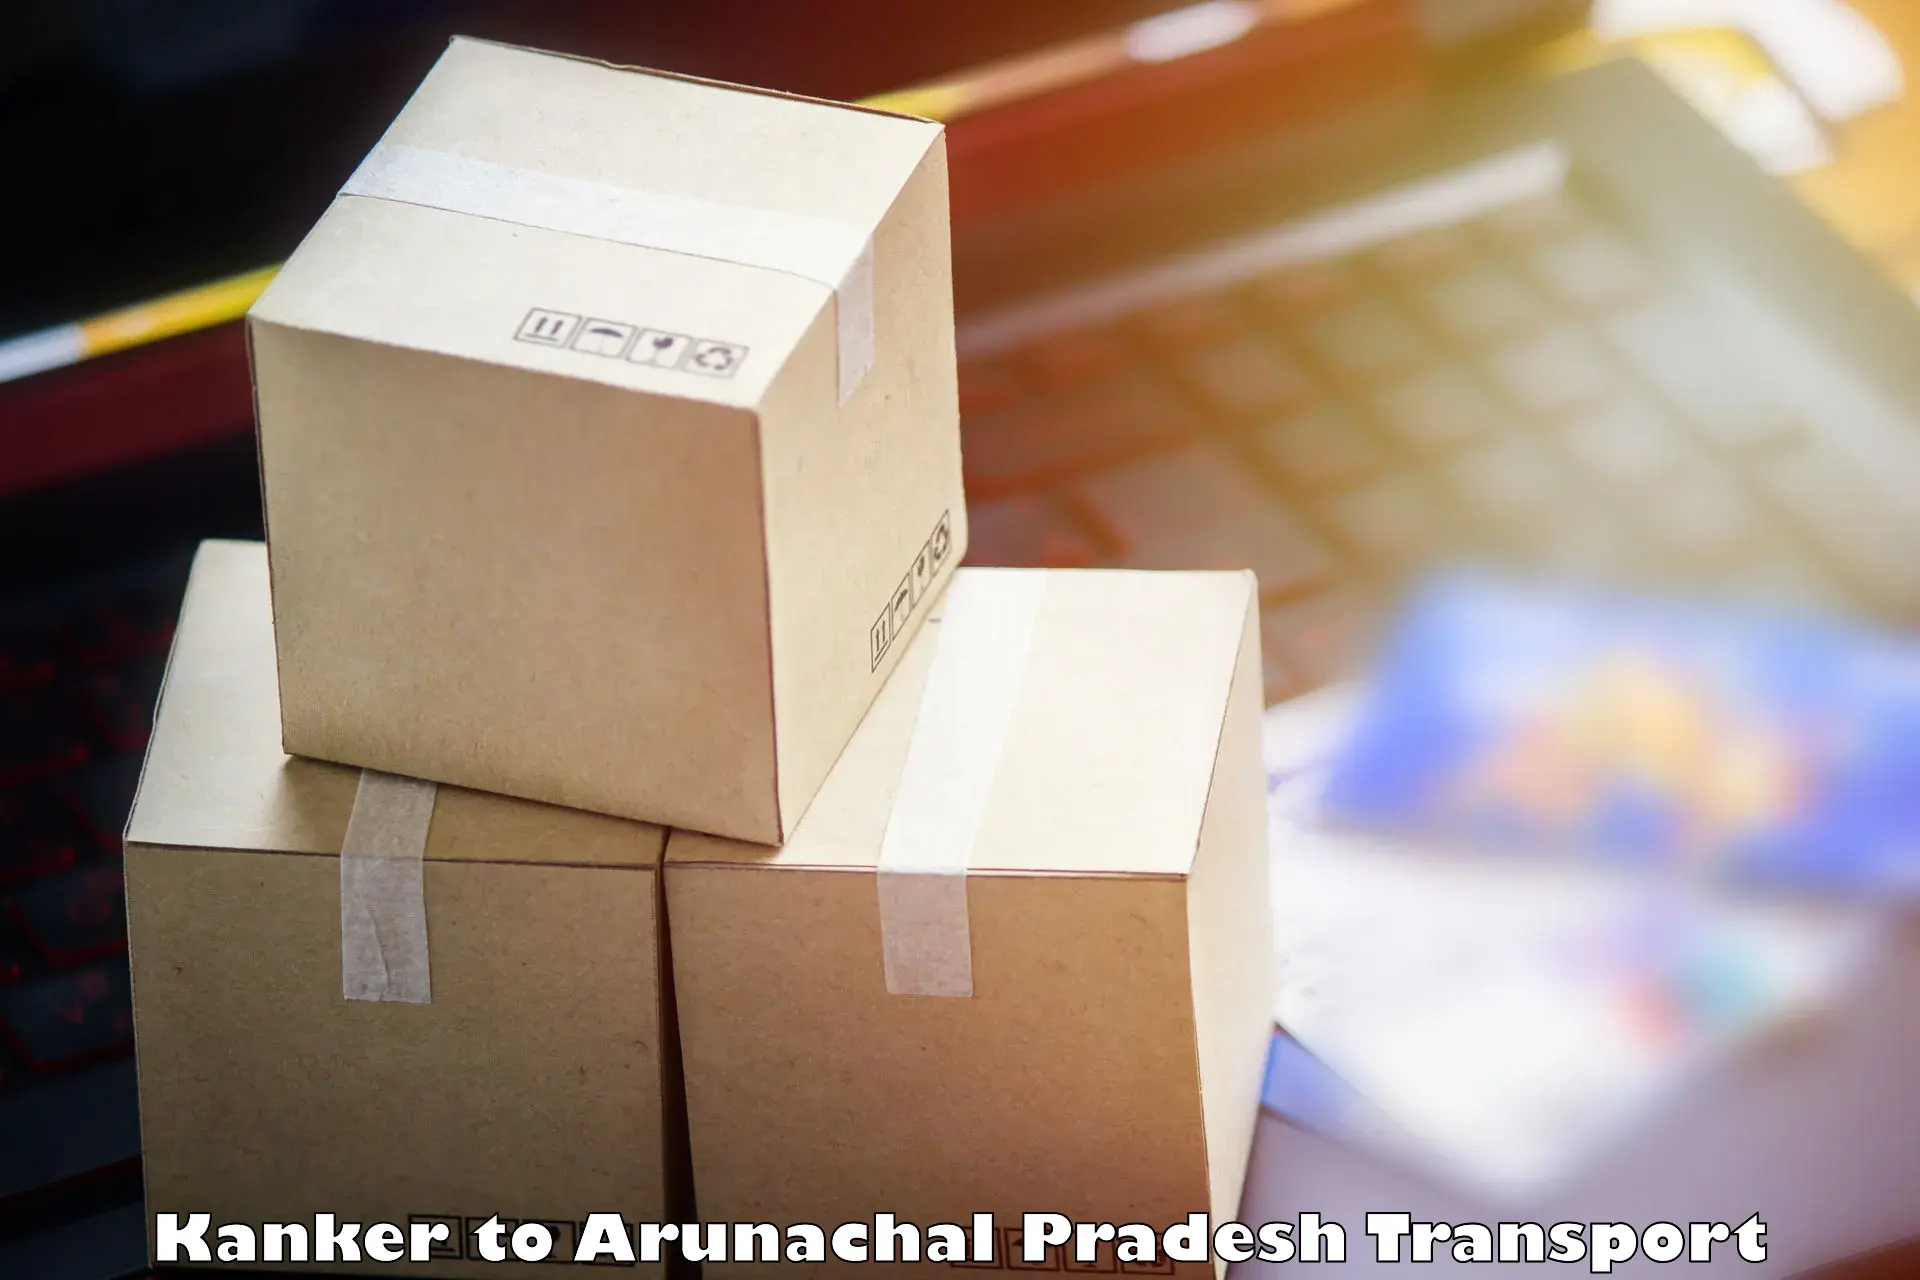 Air cargo transport services Kanker to Arunachal Pradesh